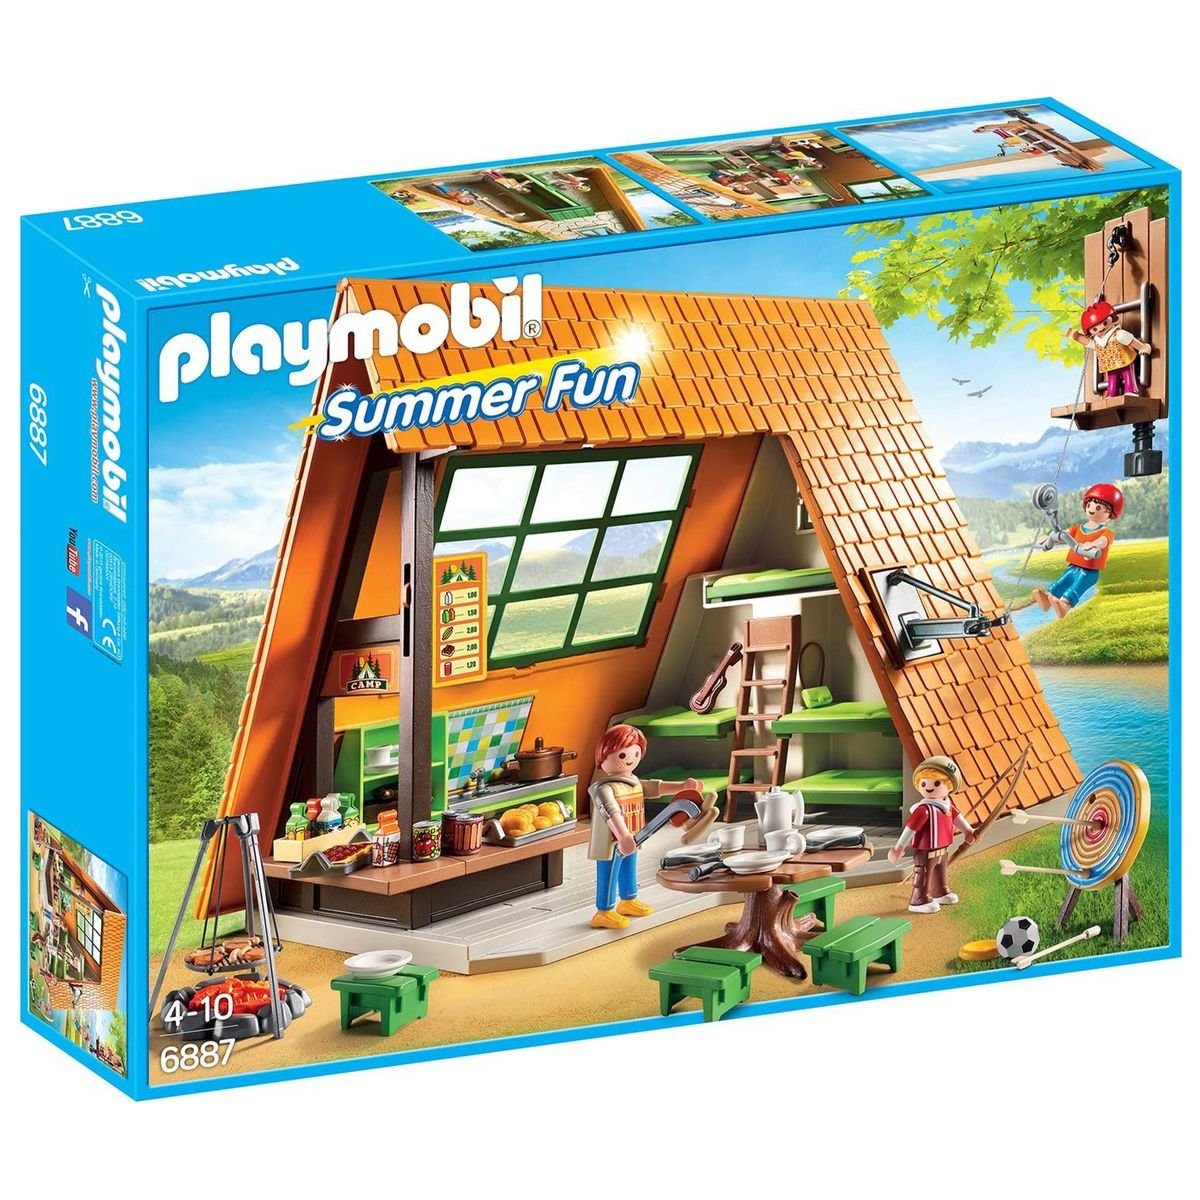 Playmobil® Spielwelt PLAYMOBIL® 6887 - Summer Fun - Großes Feriencamp,  Großer Sommerspaß für die Kinder im Playmobil Feriencamp